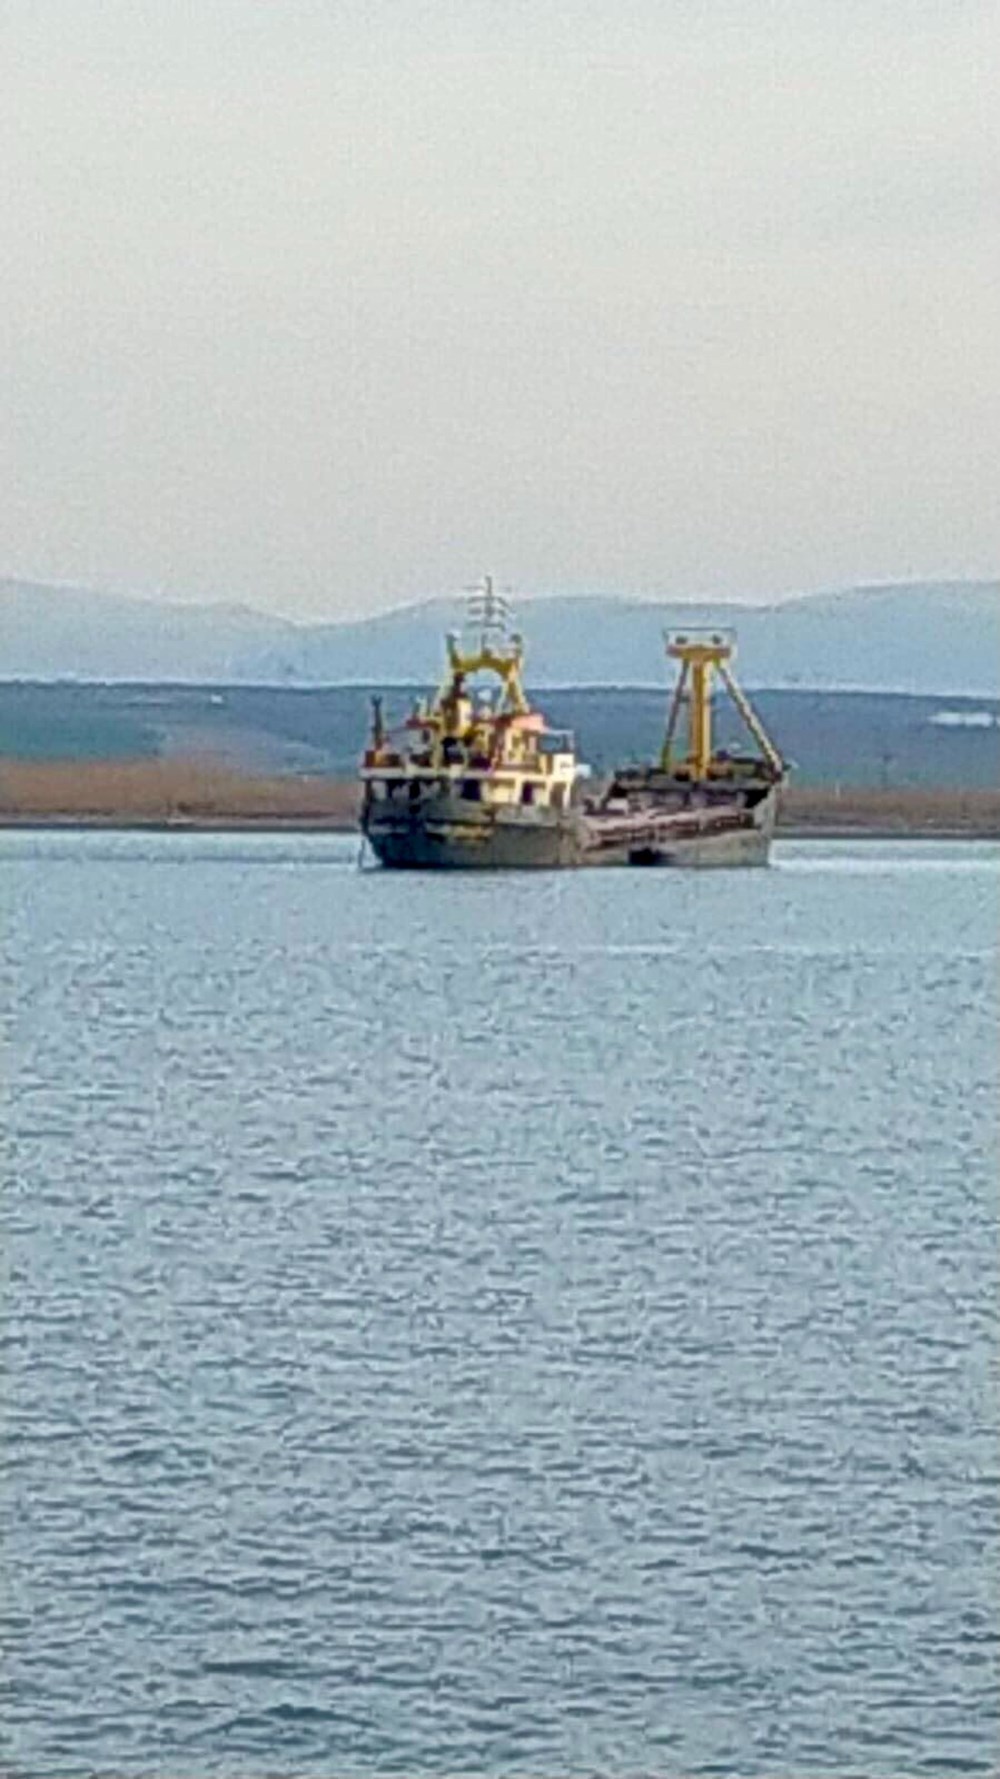 Marmara Denizi'nde kargo gemisi battı: 6 mürettebat aranıyor (Batık geminin yeri tespit edildi) - 9